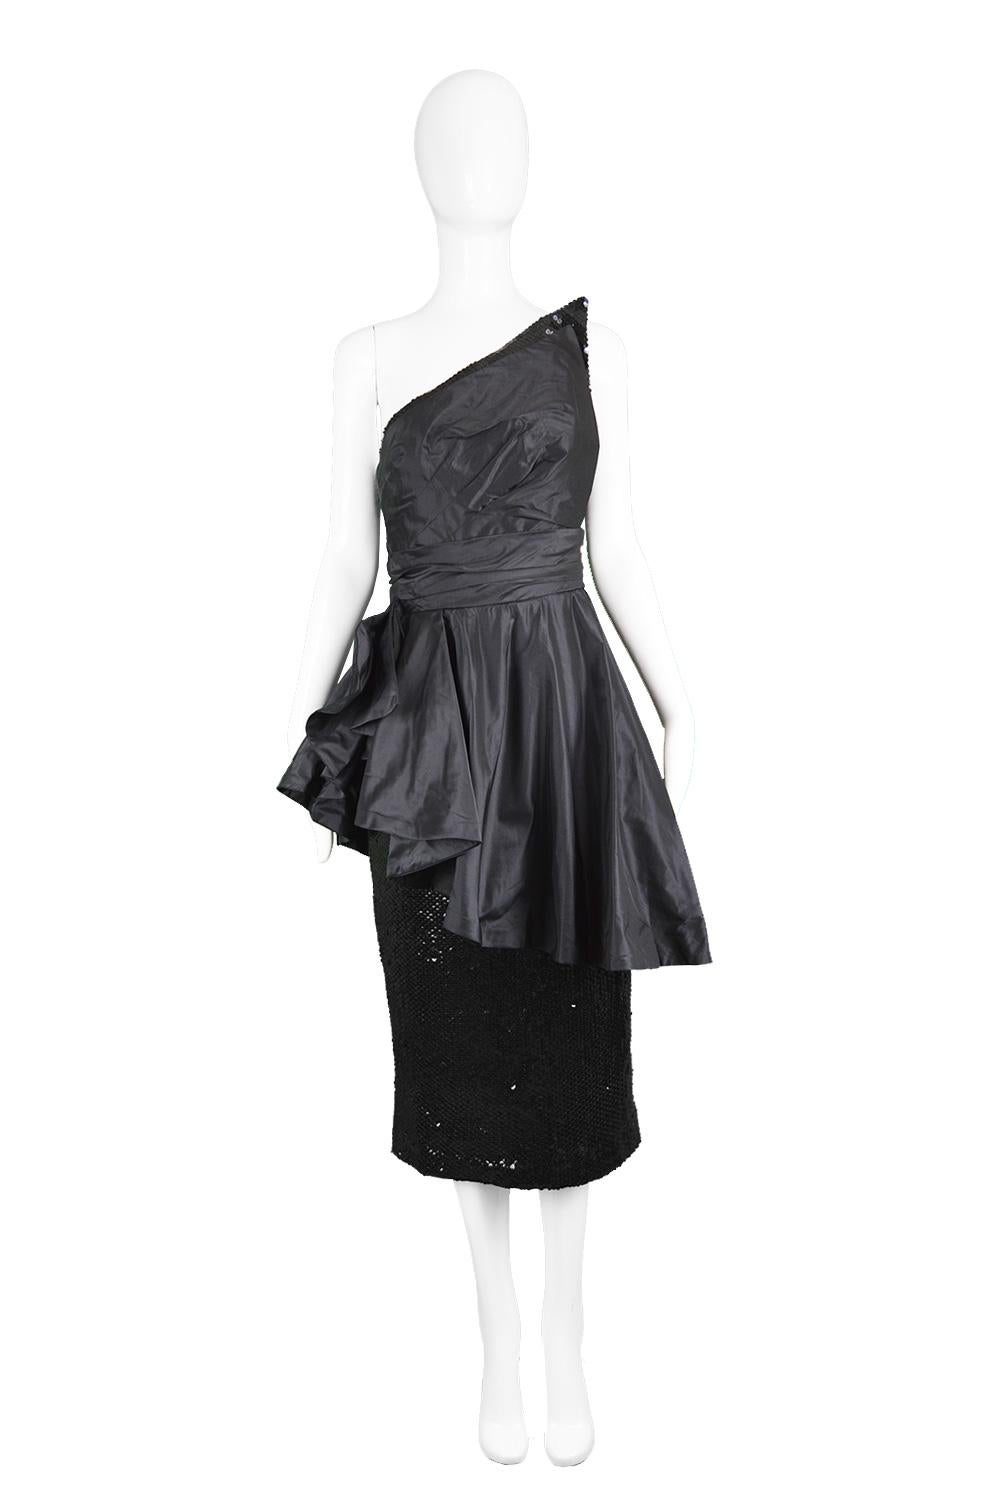 Mignon Vintage Black Sequin Silk Asymmetrical Origami One Shoulder Cocktail Party Dress, 1980s

Estimated Size: UK 6-8/ US 2-4/ EU 34-36. Please check measurements.
Bust - 32” / 81cm
Waist - 25” / 63cm
Hips - 36” / 91cm
Length (Bust to Hem) - 37” /